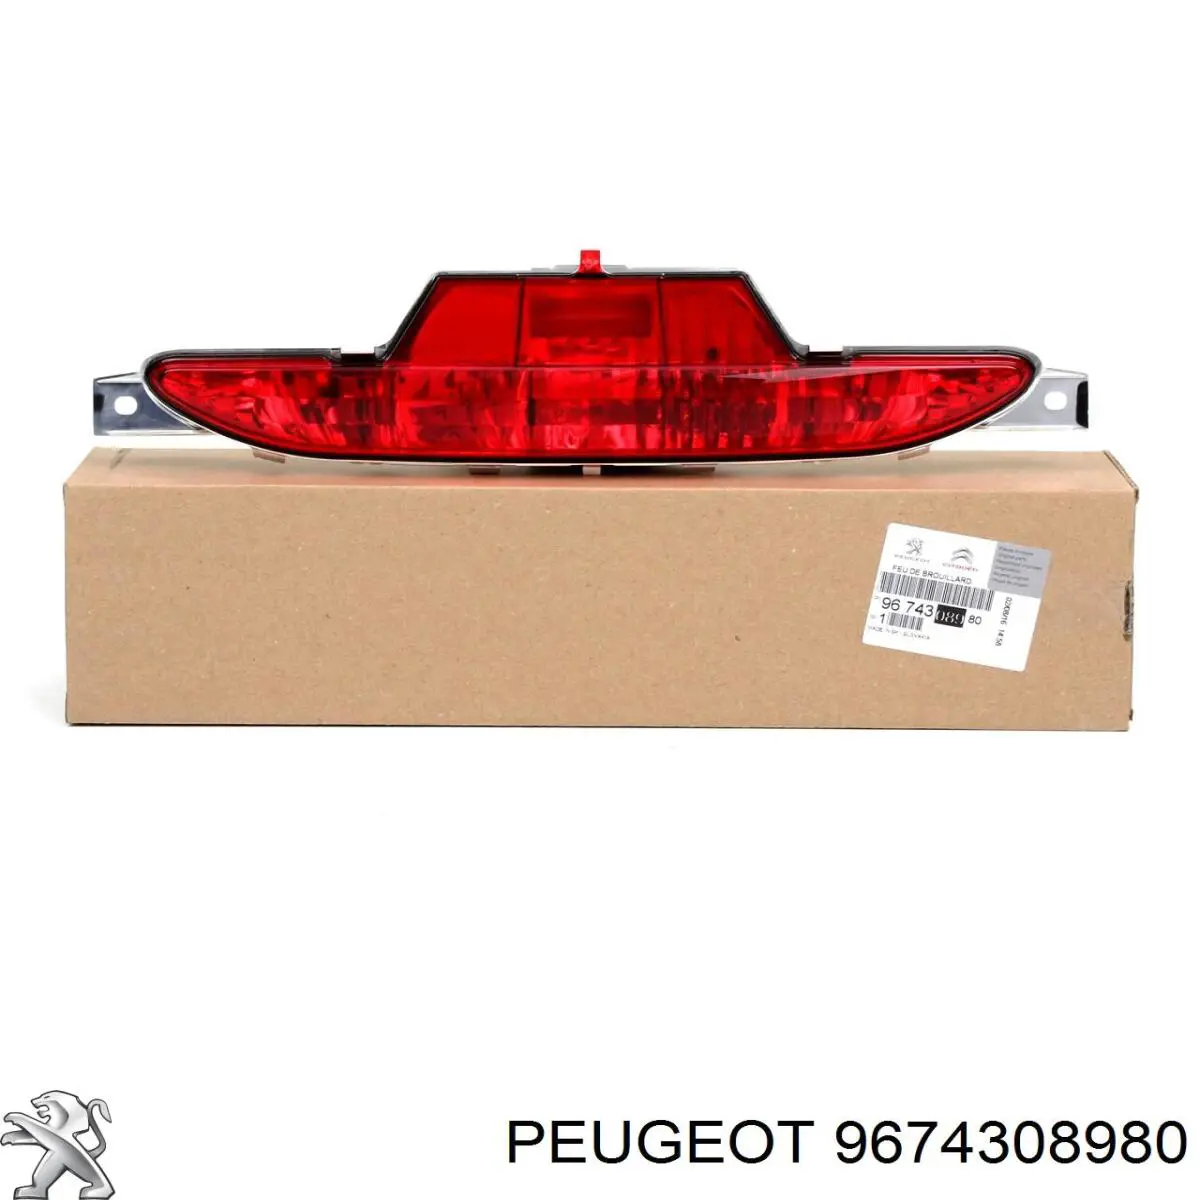 9674308980 Peugeot/Citroen lanterna de nevoeiro traseira